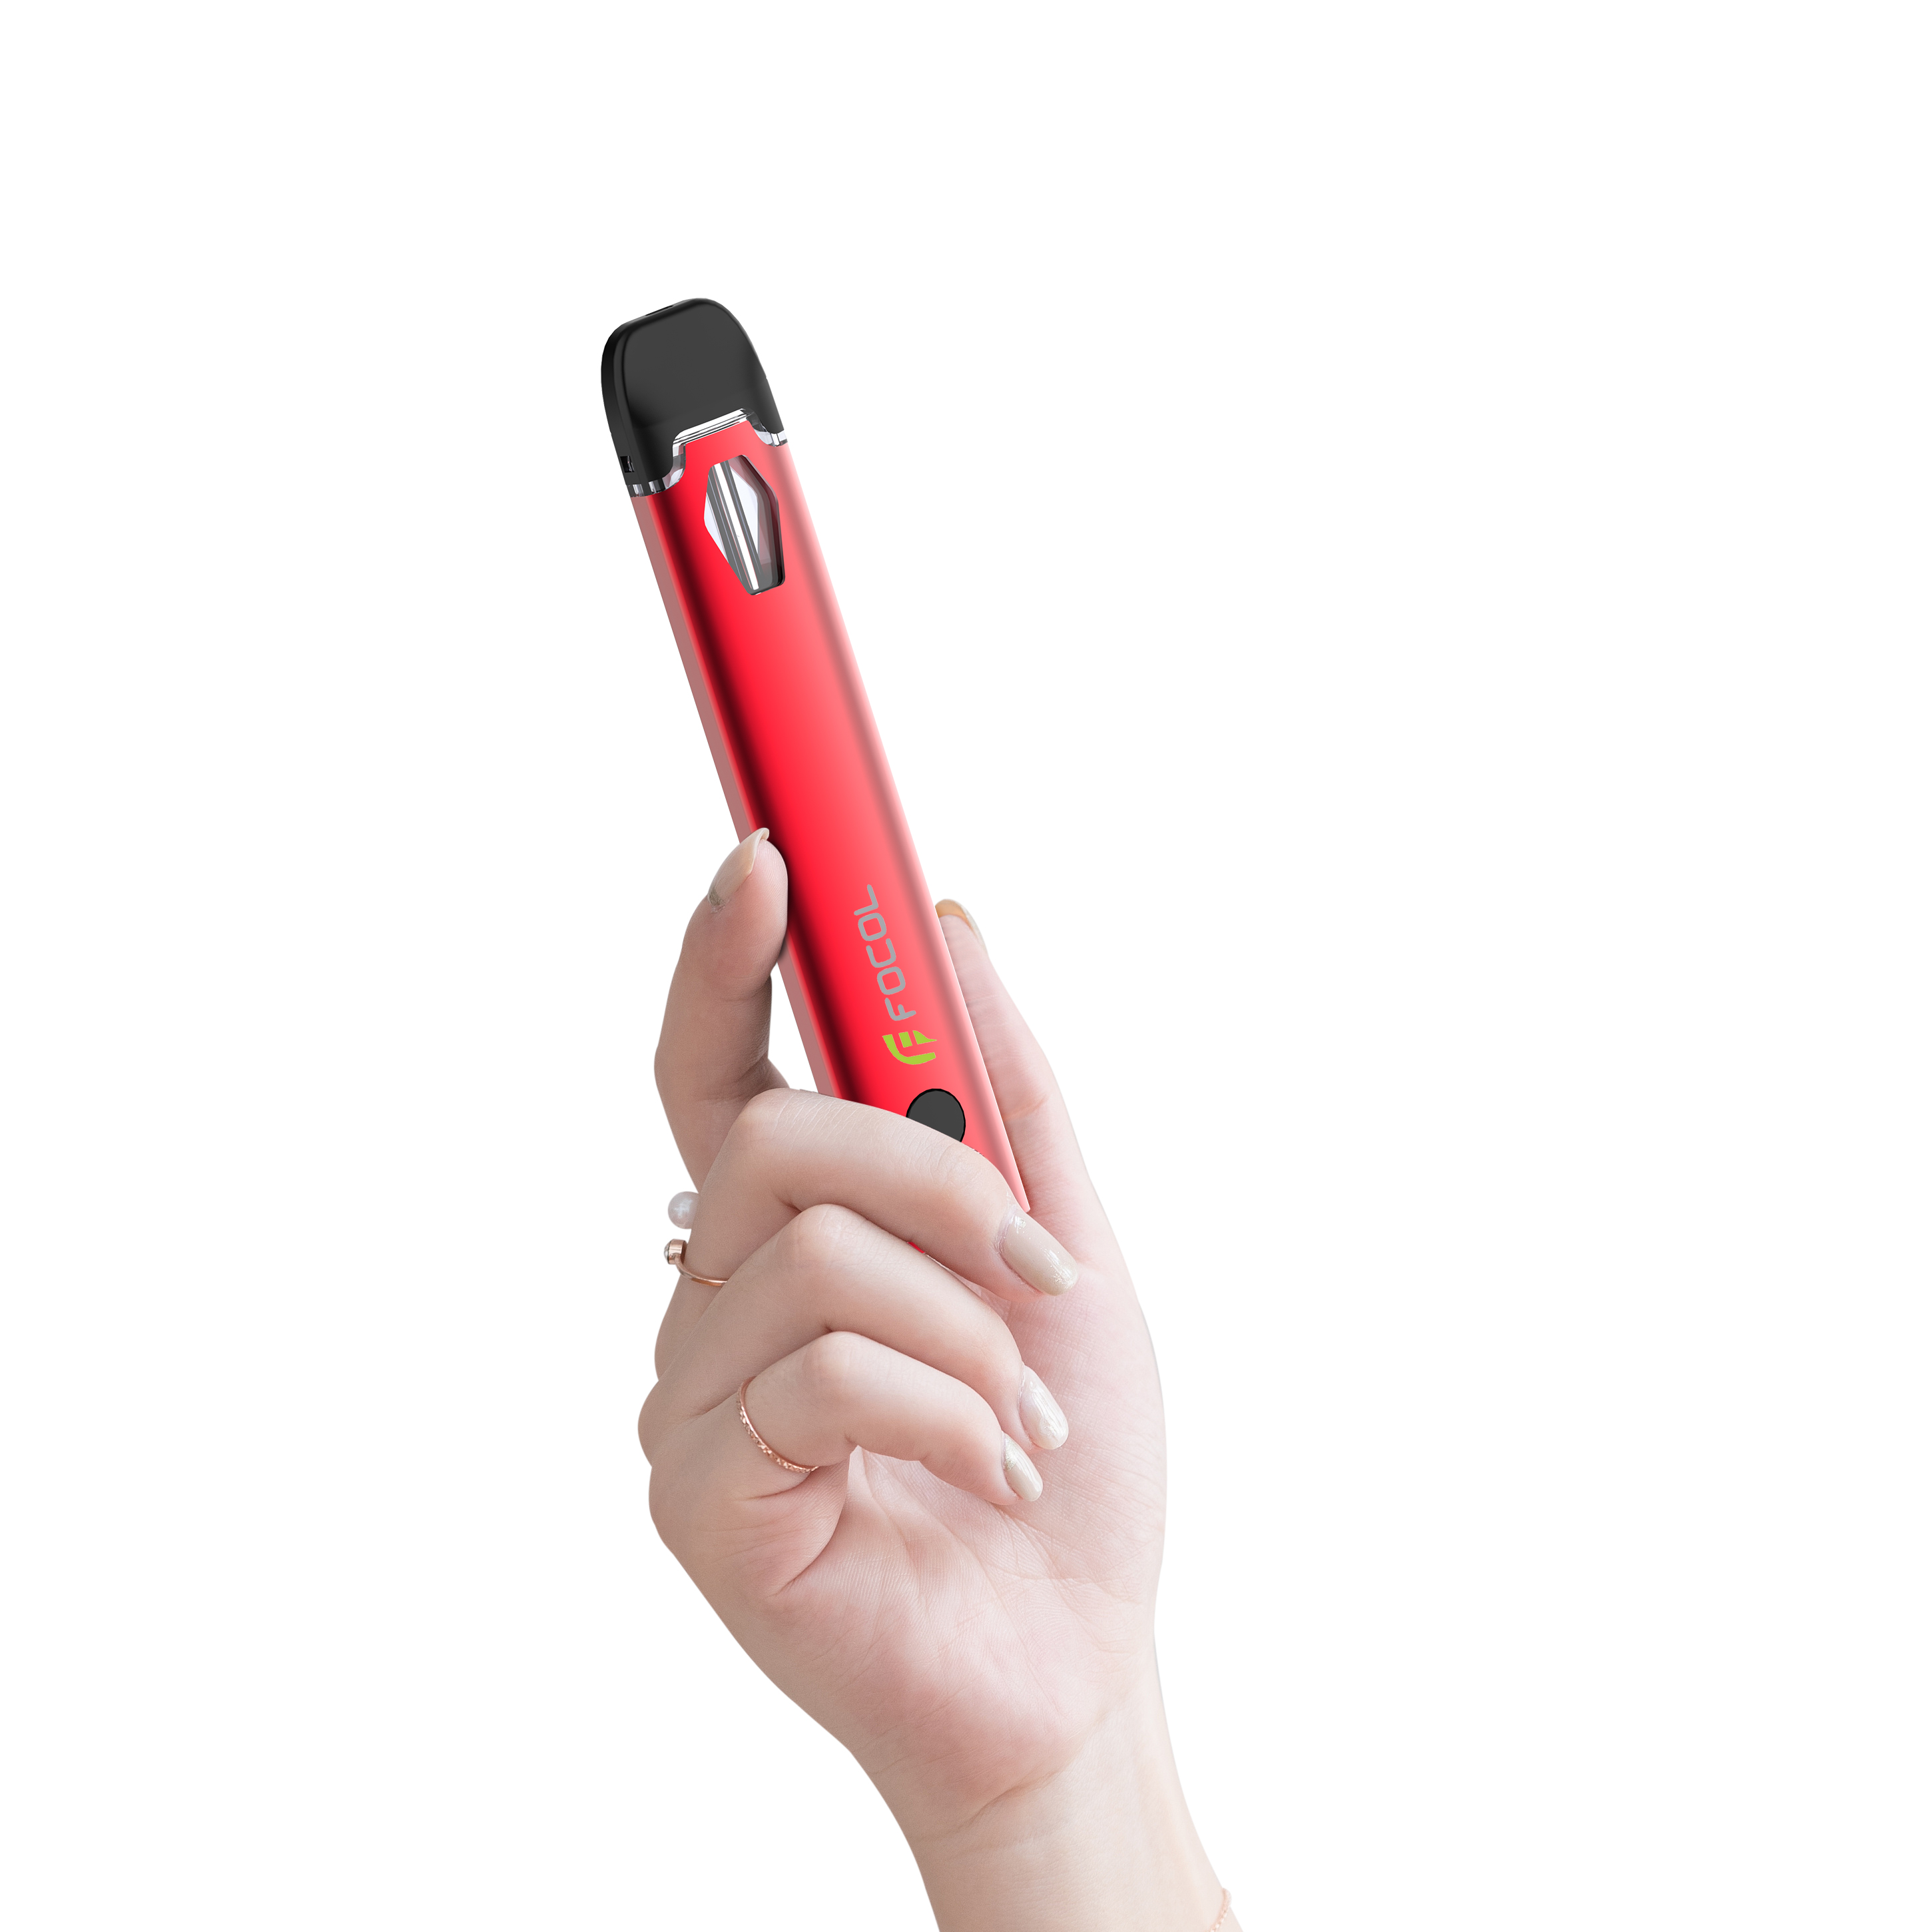  Focol Best Delta-8 Disposable Vape Pens 2022